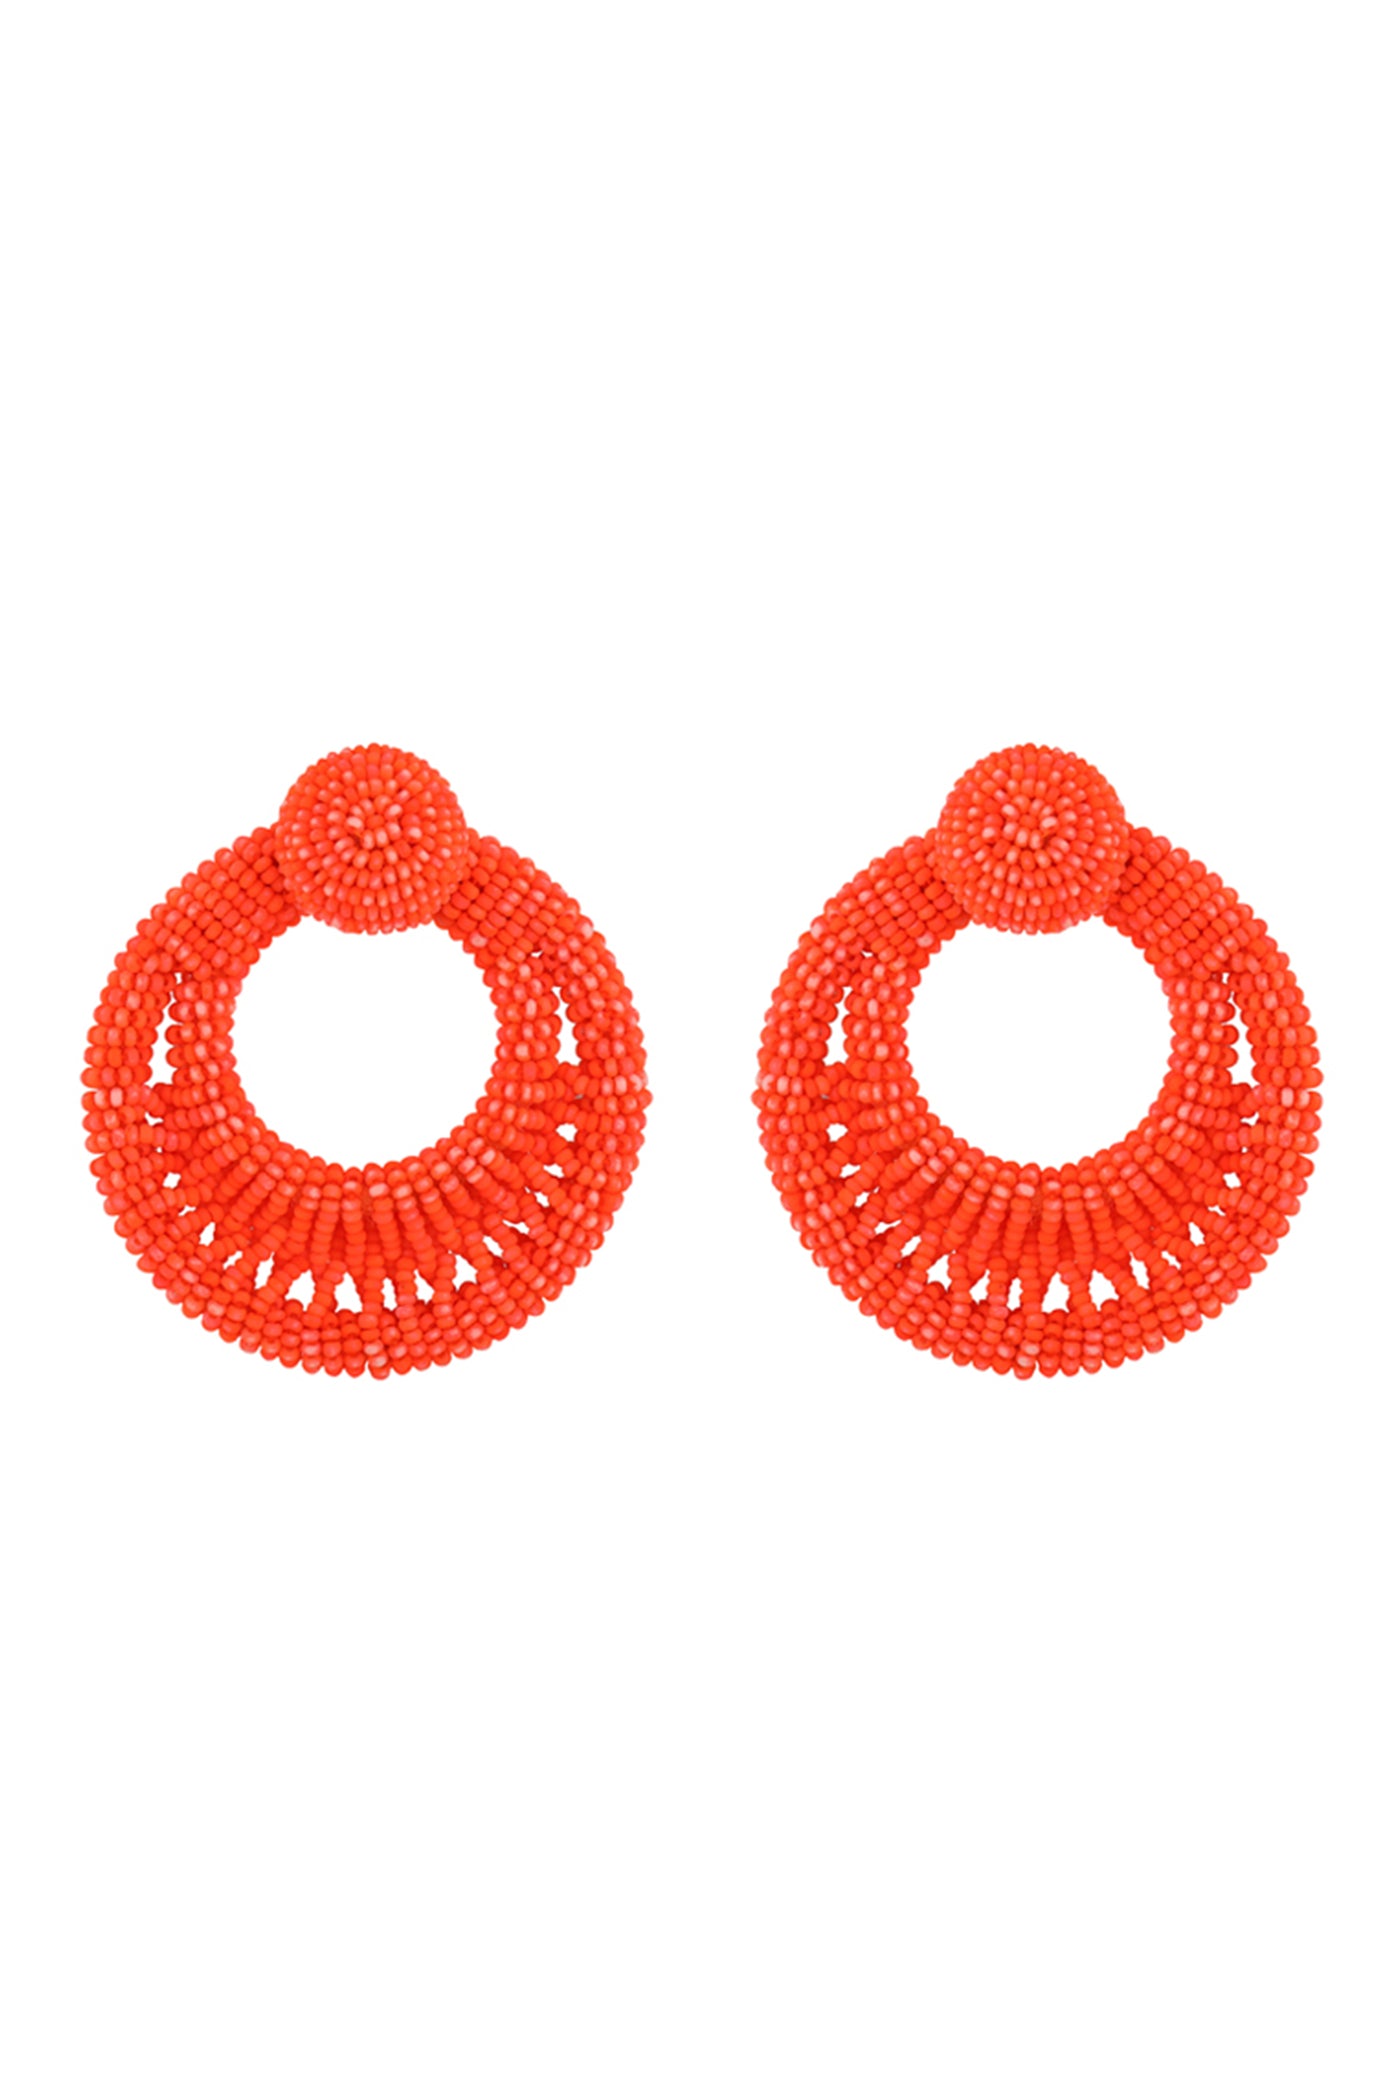 Neon Orange Twisted Hoop Earrings